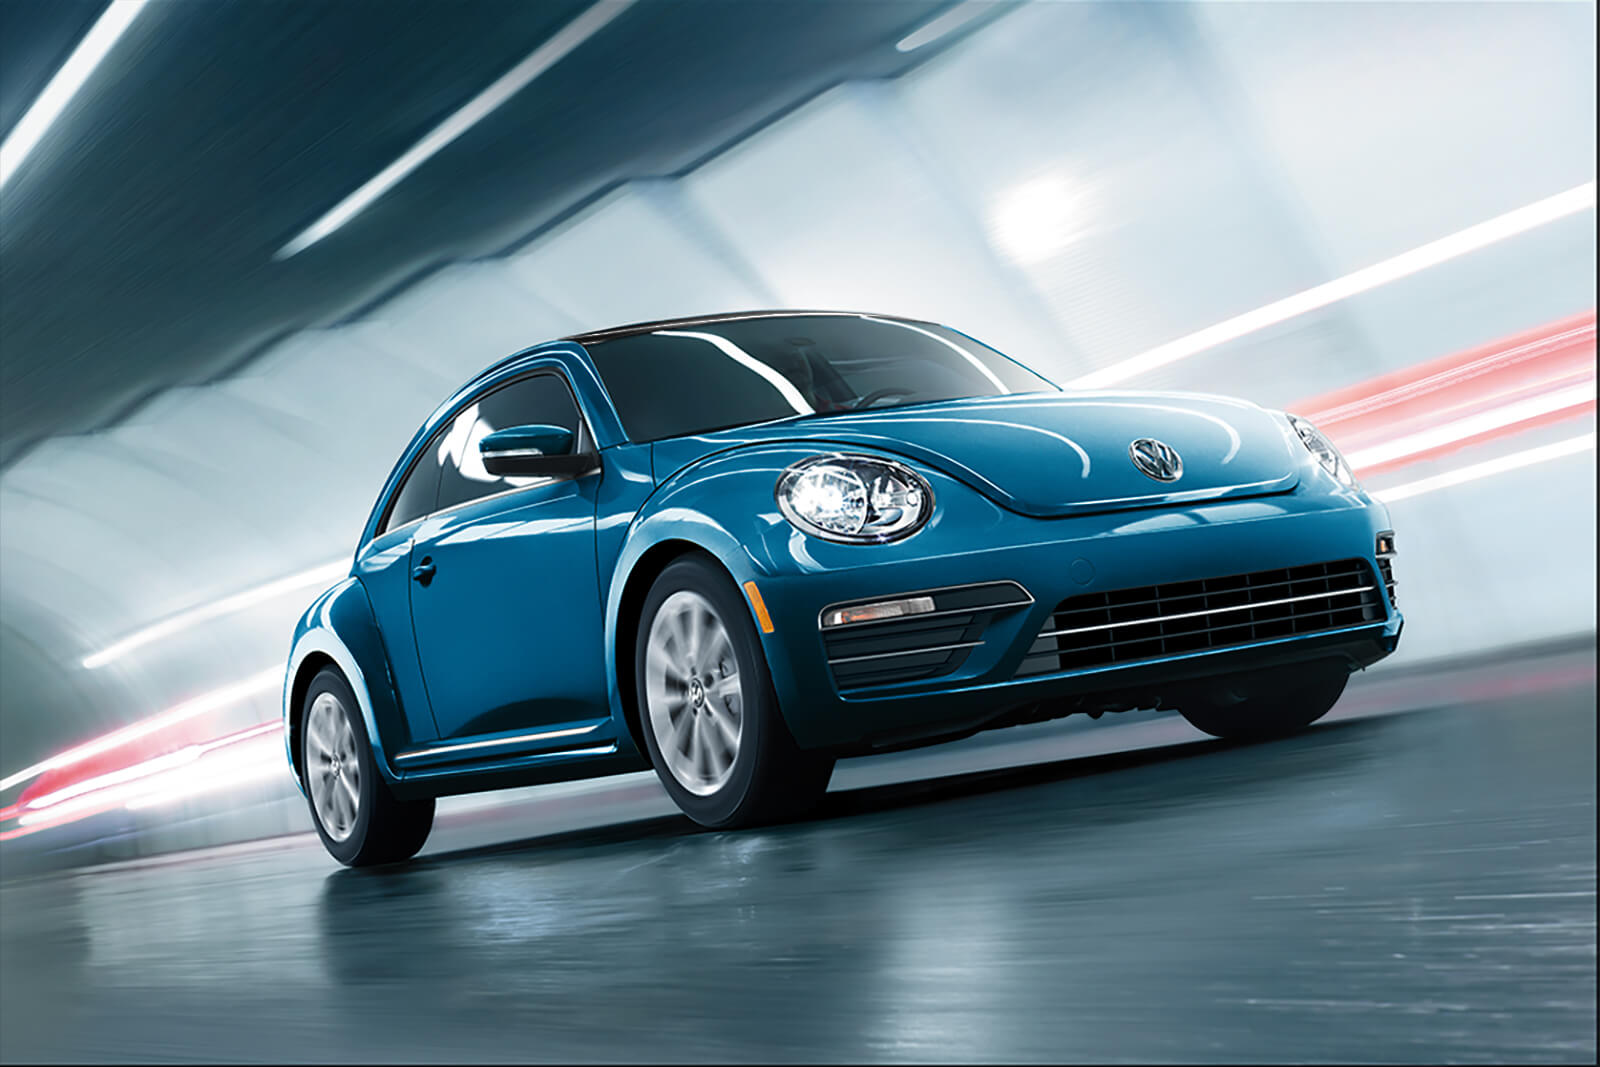 Performance of the 2018 Volkswagen Beetle